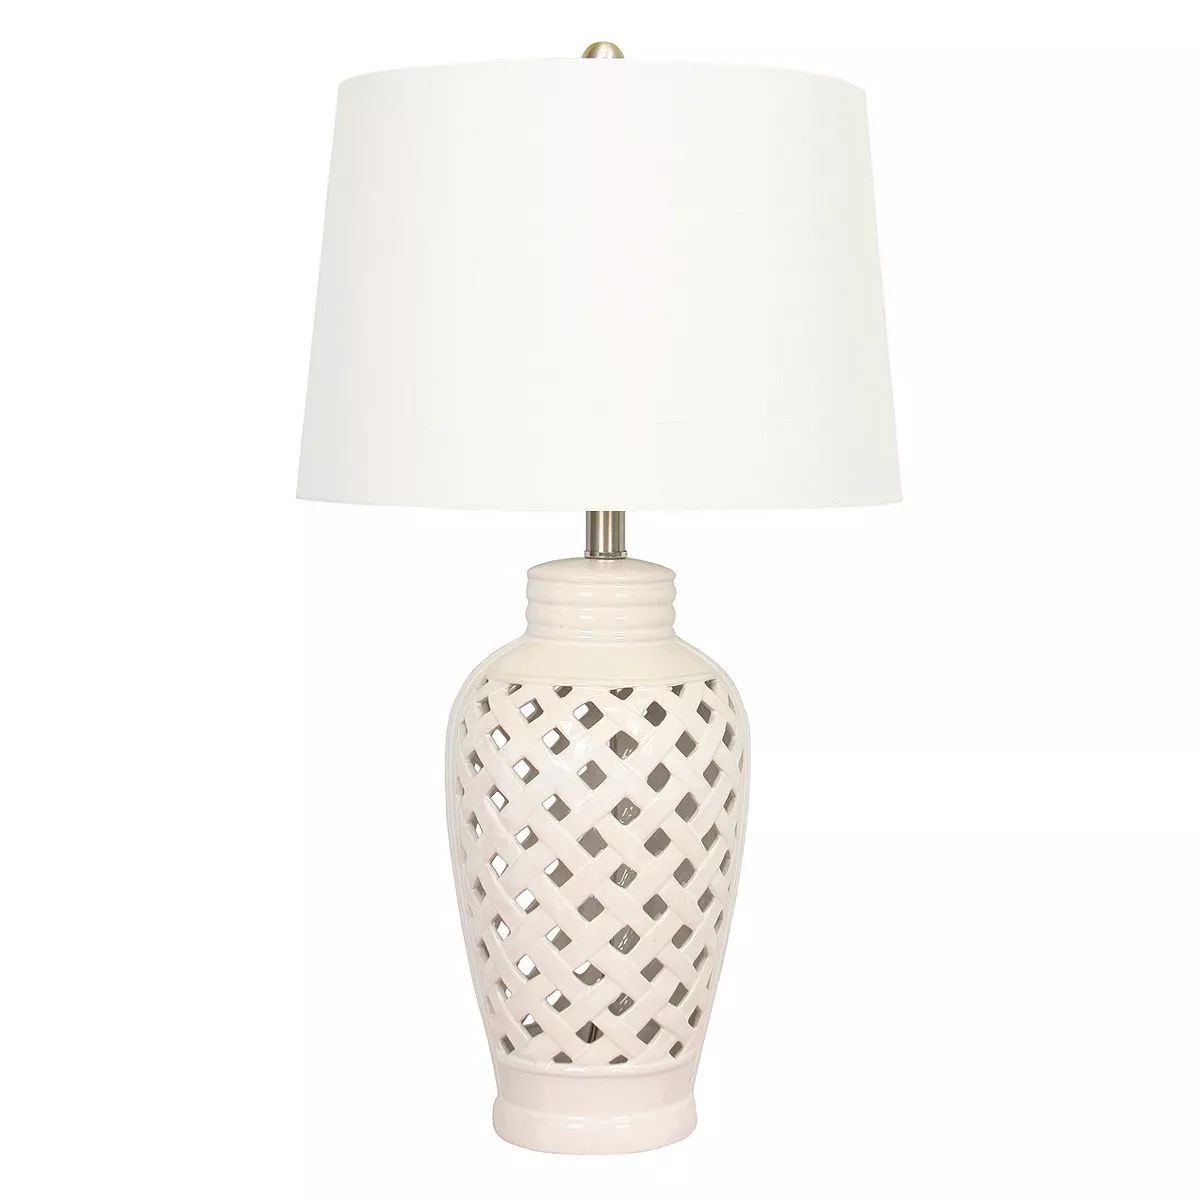 Ceramic Table Lamp with Lattice Design - White (26") | Target